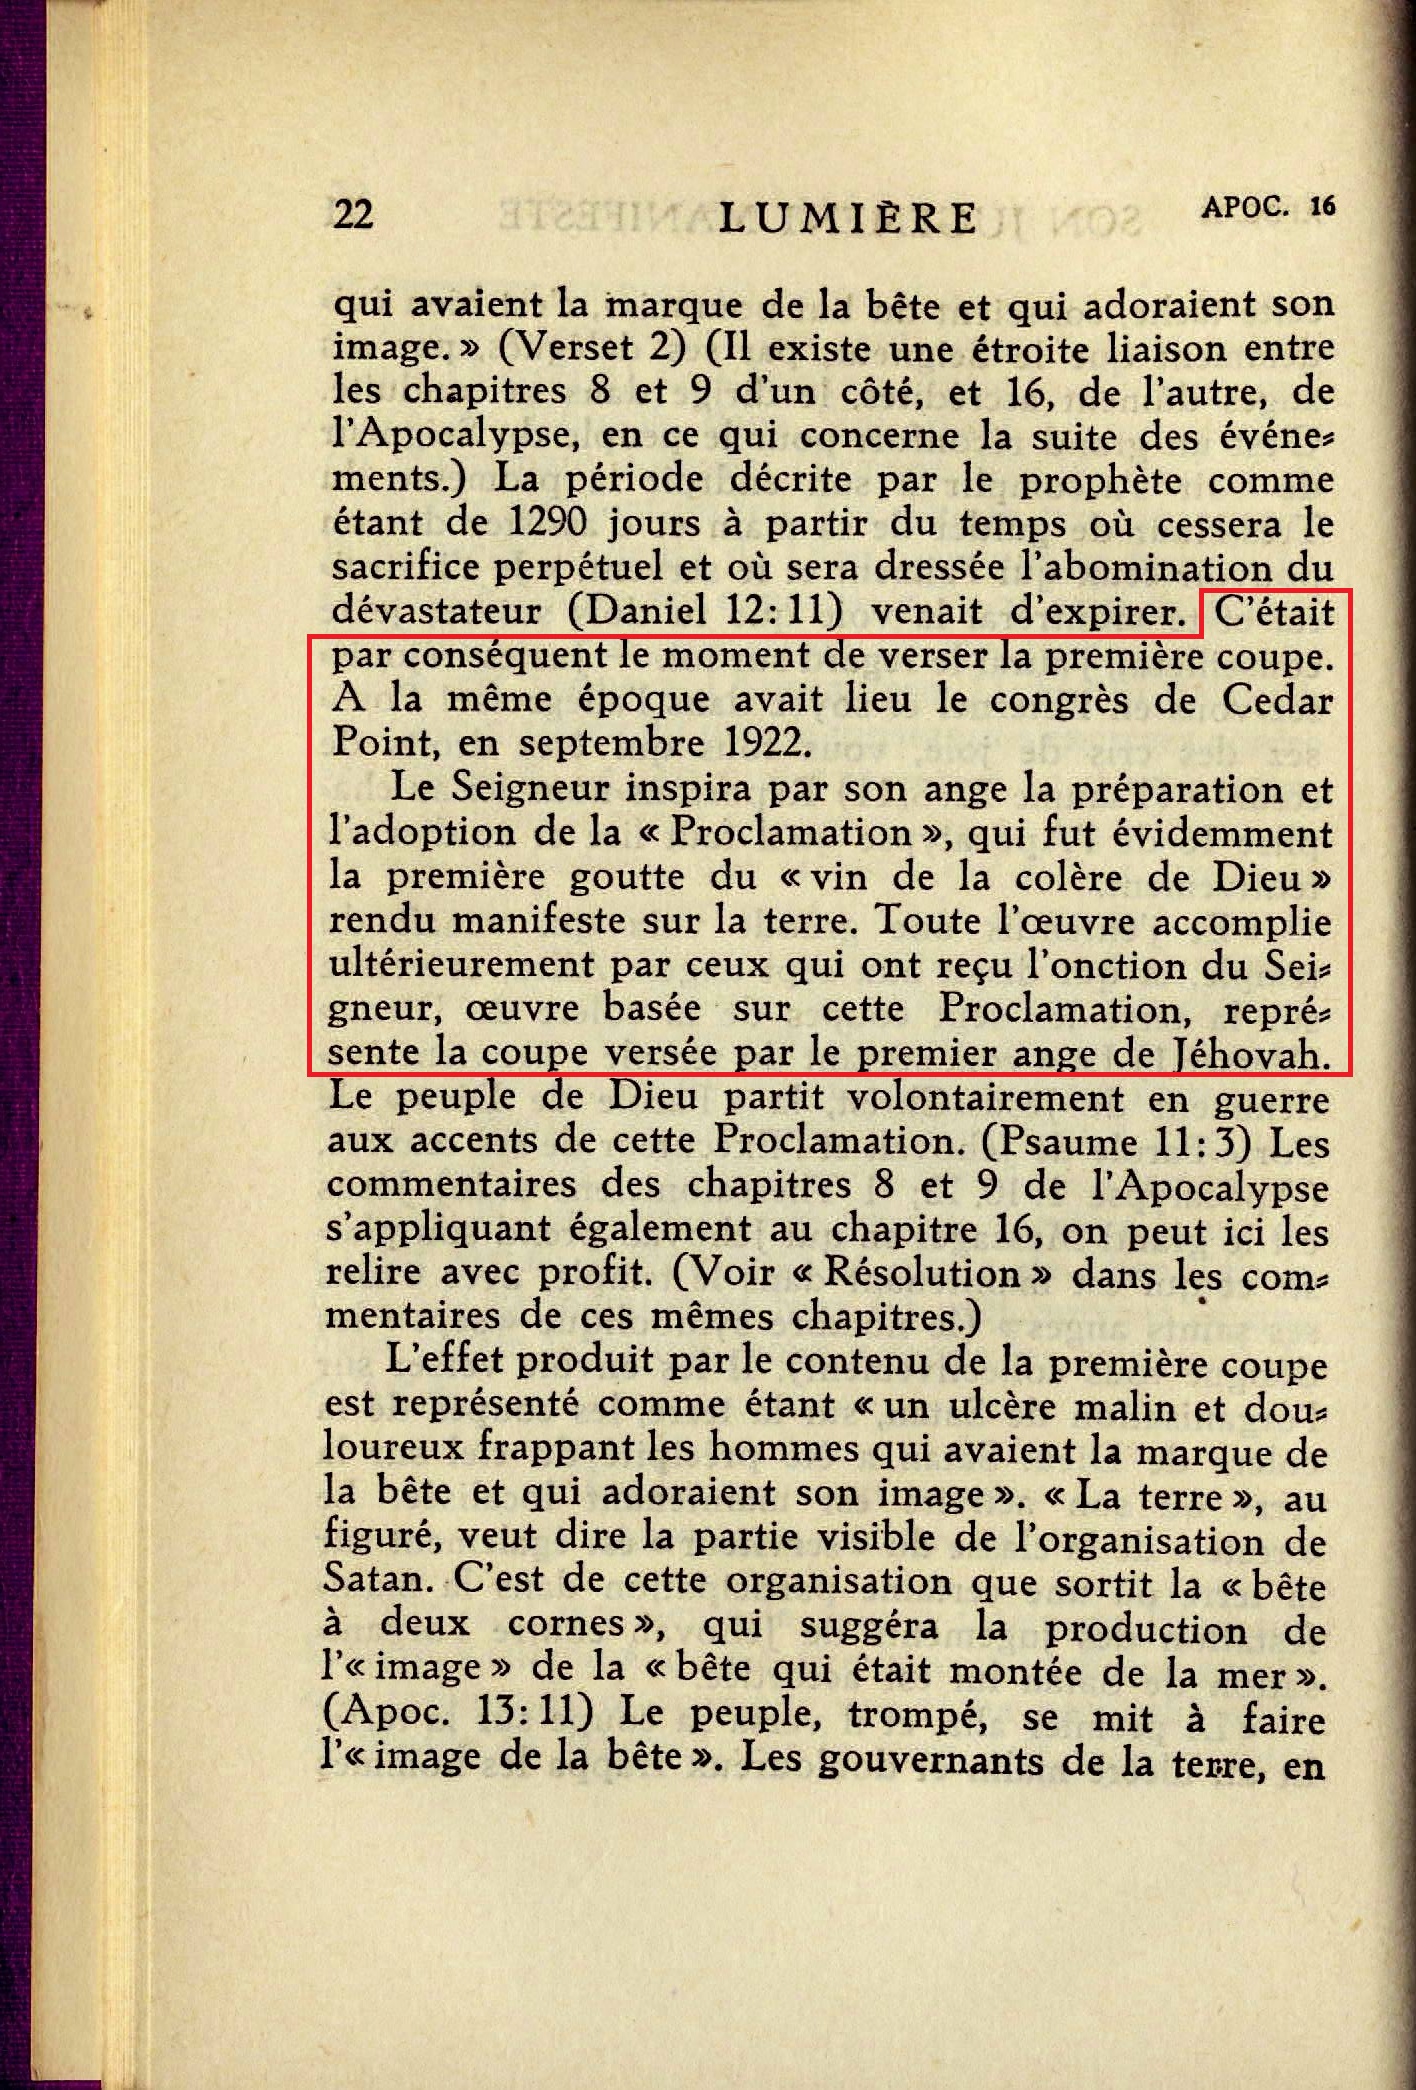 La première coupe versée = Le Volume I des Etudes des Ecritures Lumiere-Vol2-1930-p22-Coupe1